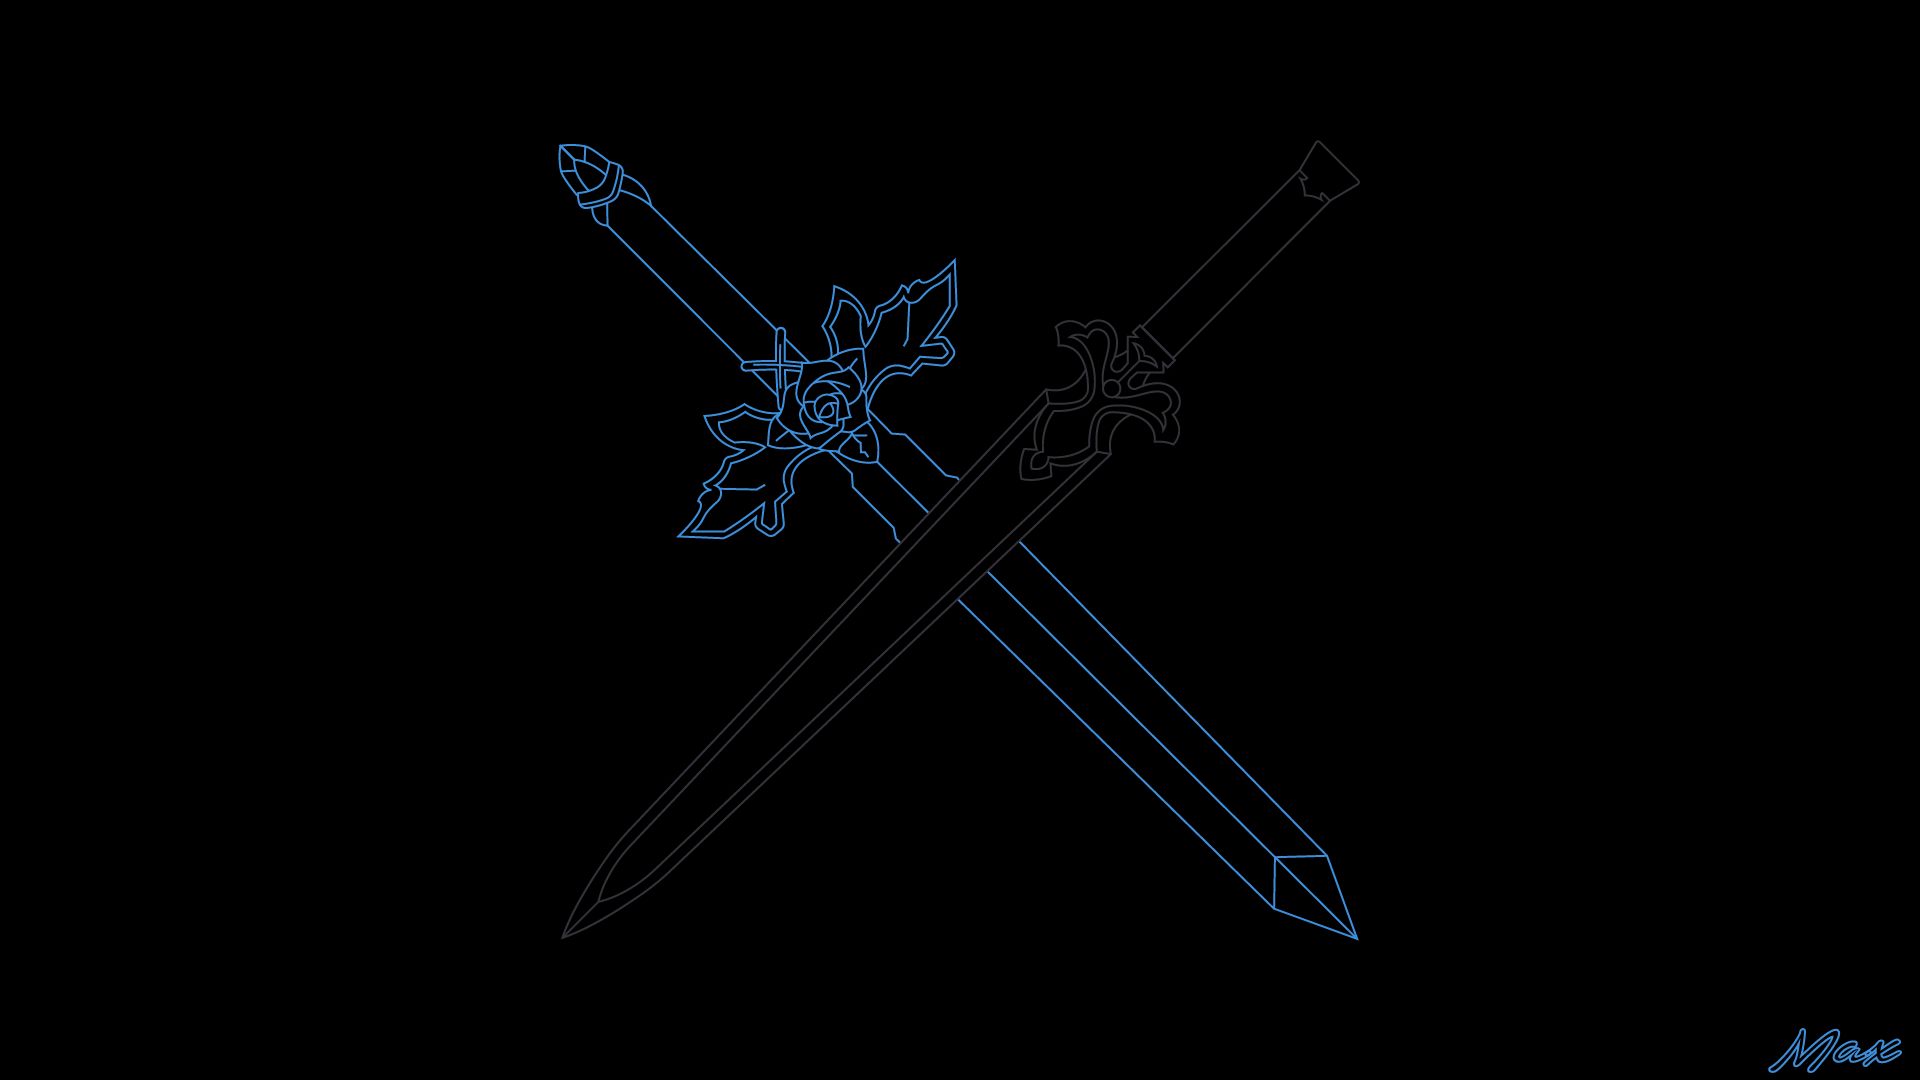 night sky sword (sword art online), sword art online, anime, sword art online: alicization, blue rose sword (sword art online)